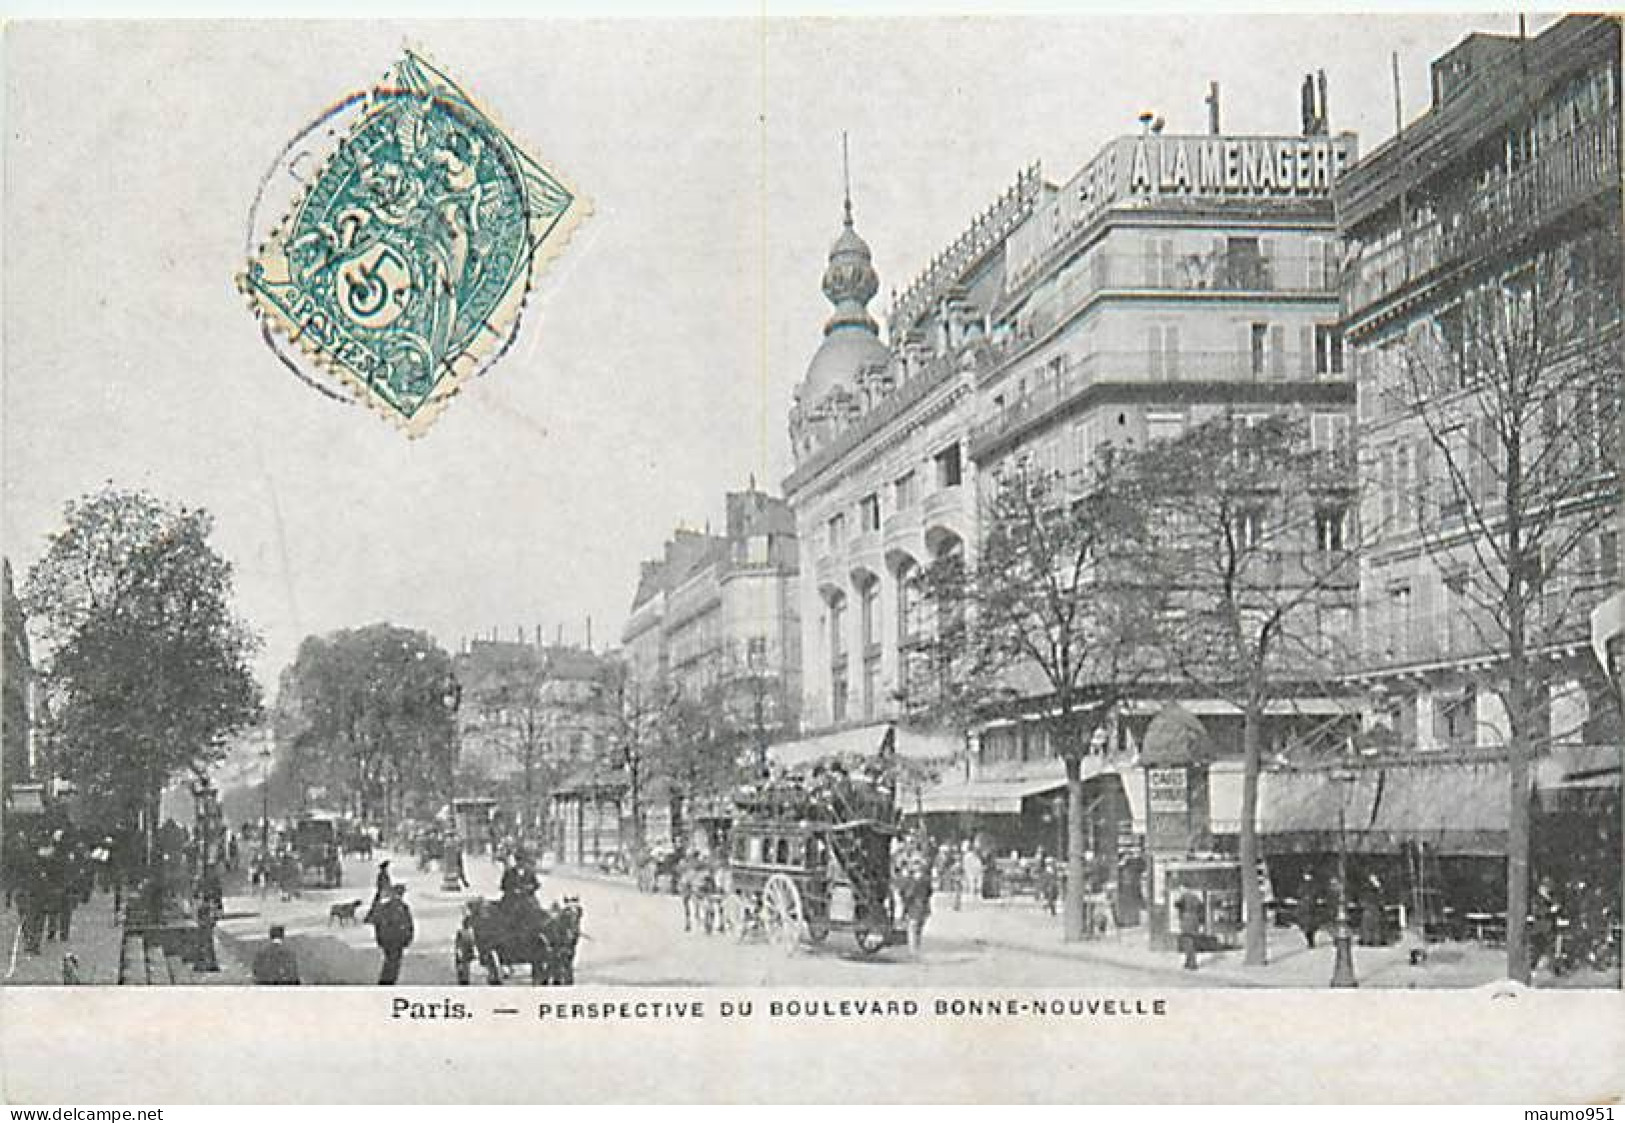 75 PARIS - Lot de 19 cartes diverses